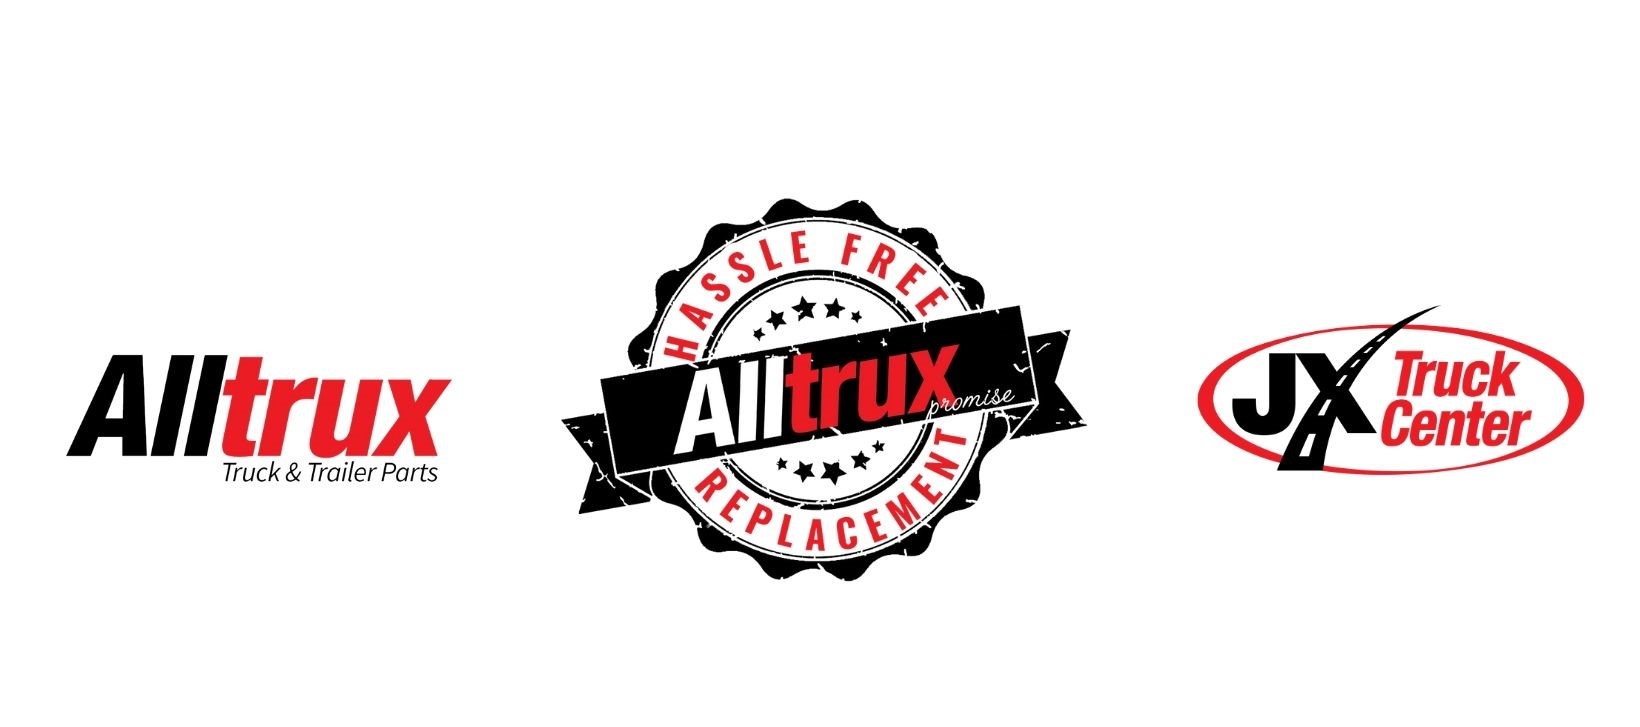 Alltrux logo, Alltrux promise logo and the JX Truck Center logo as the cover photo for Spotlight on the New Alltrux HVAC Product Line